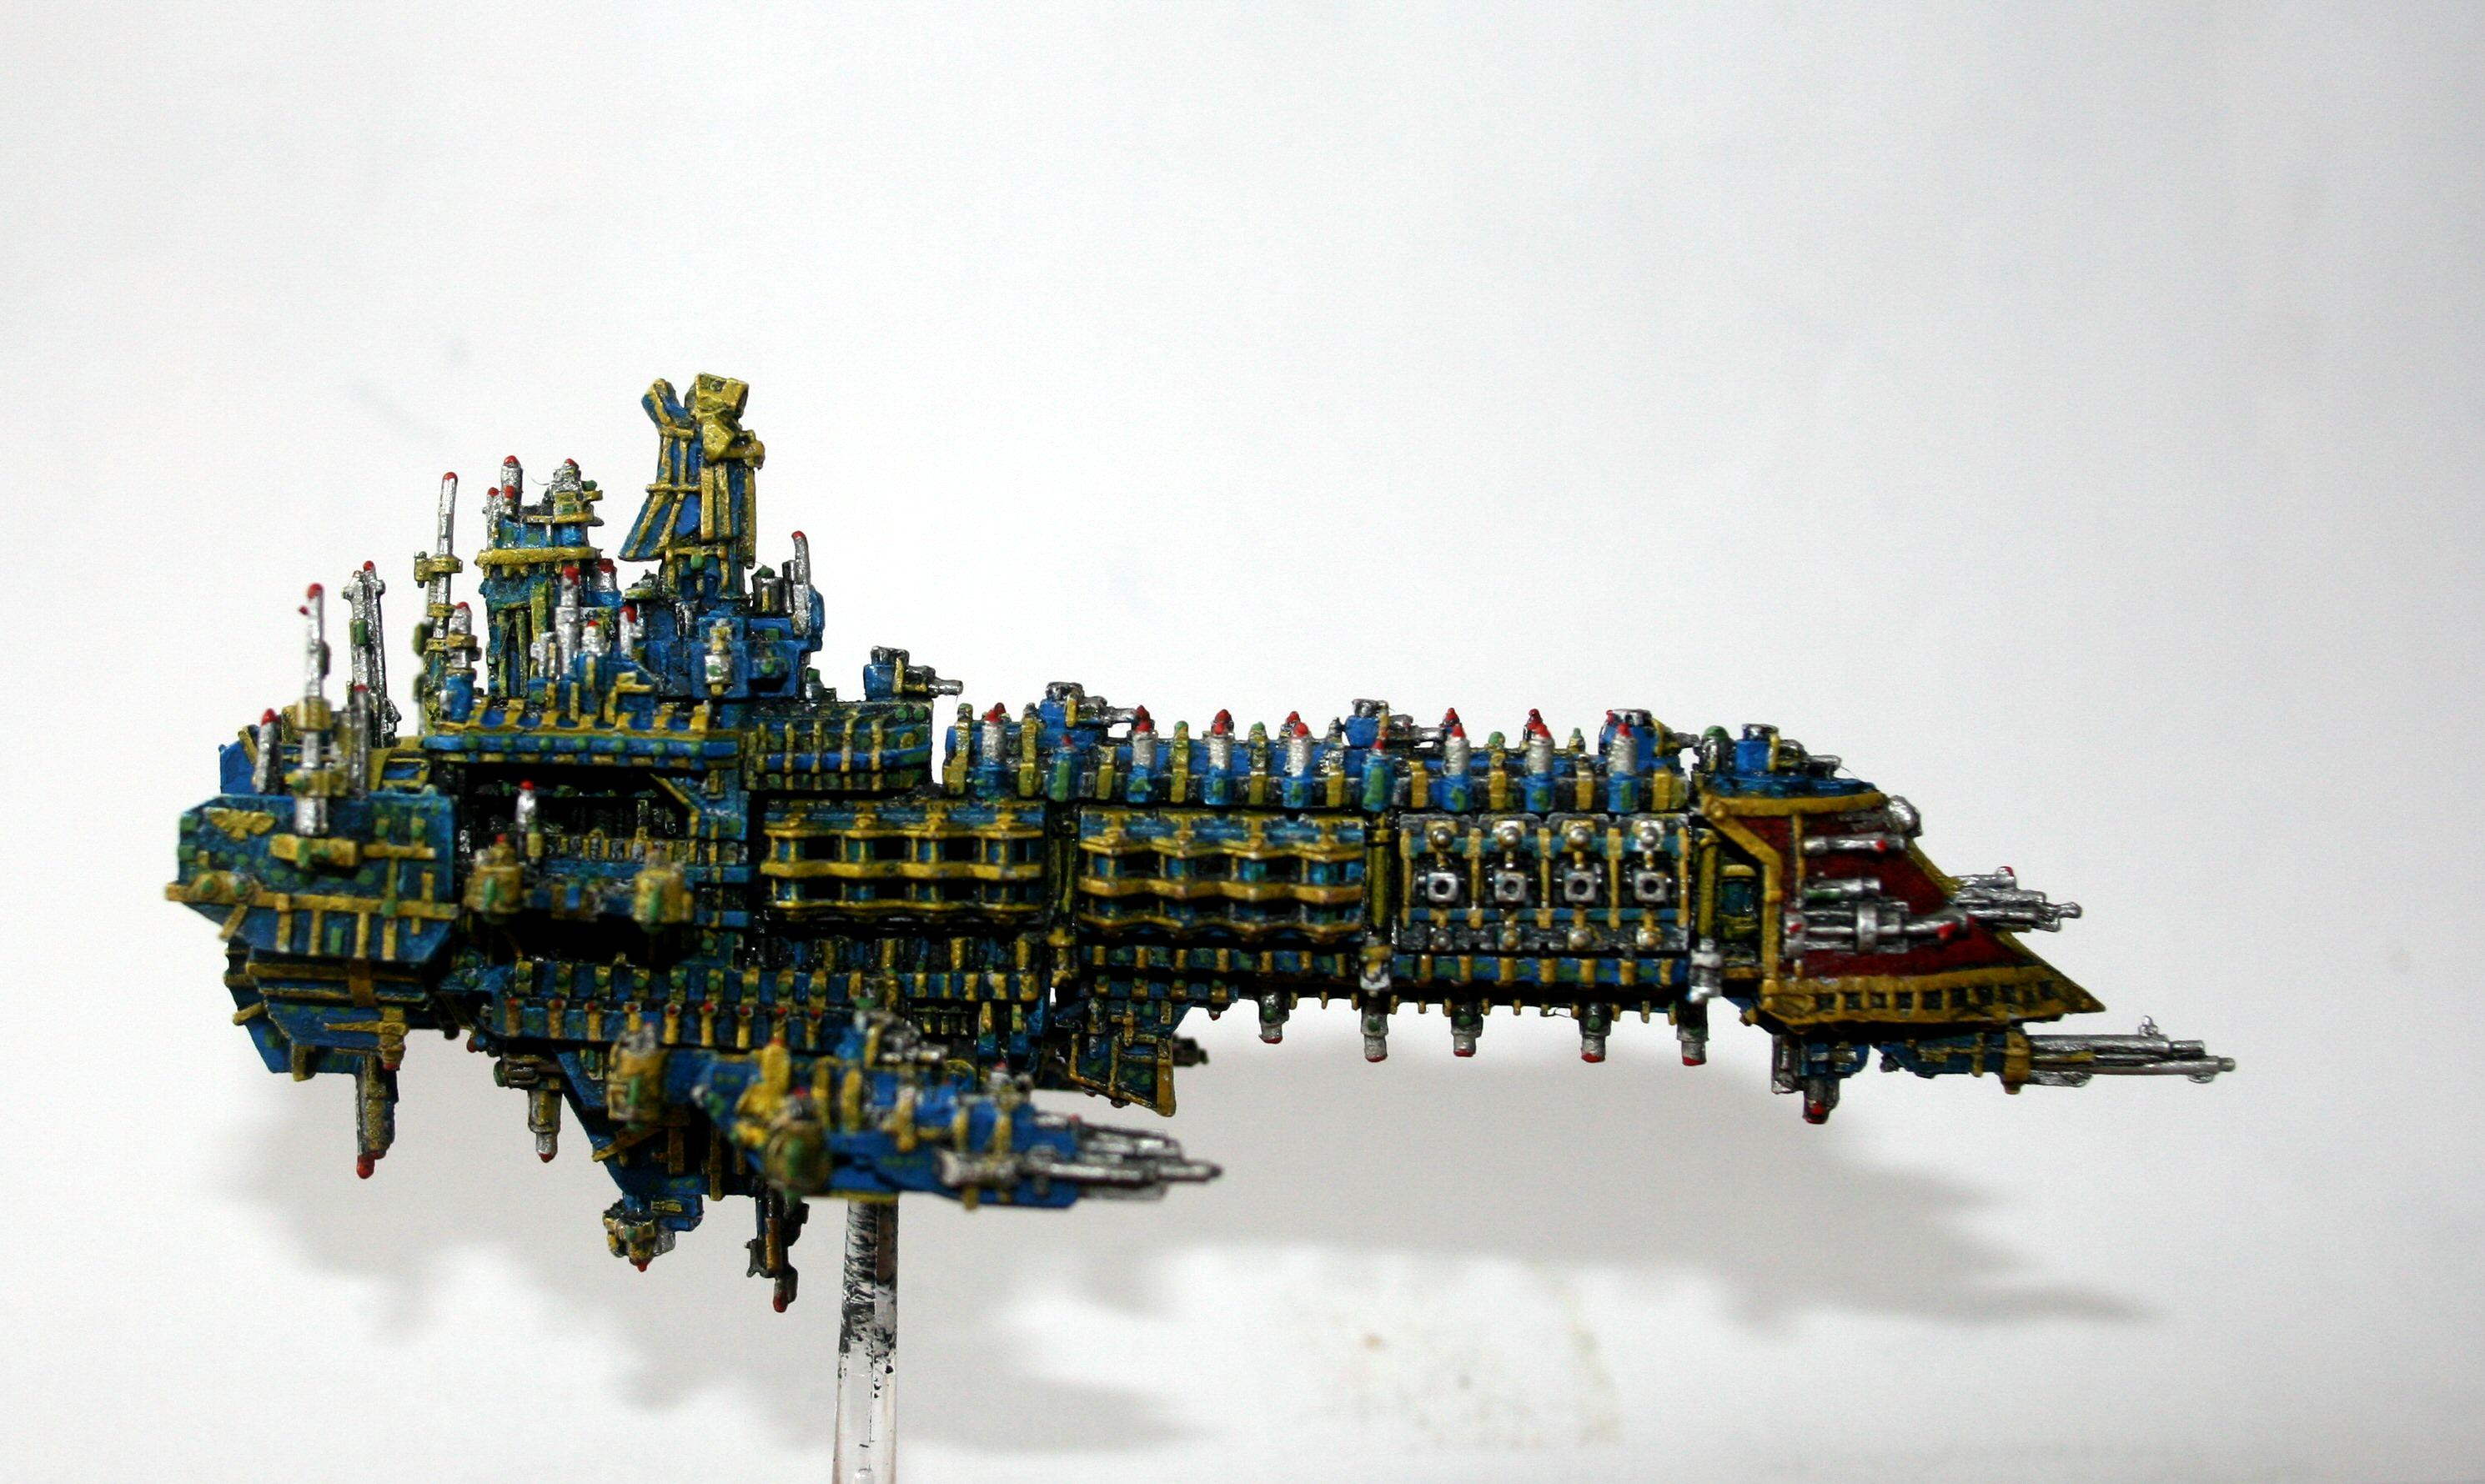 emperor class battleship size